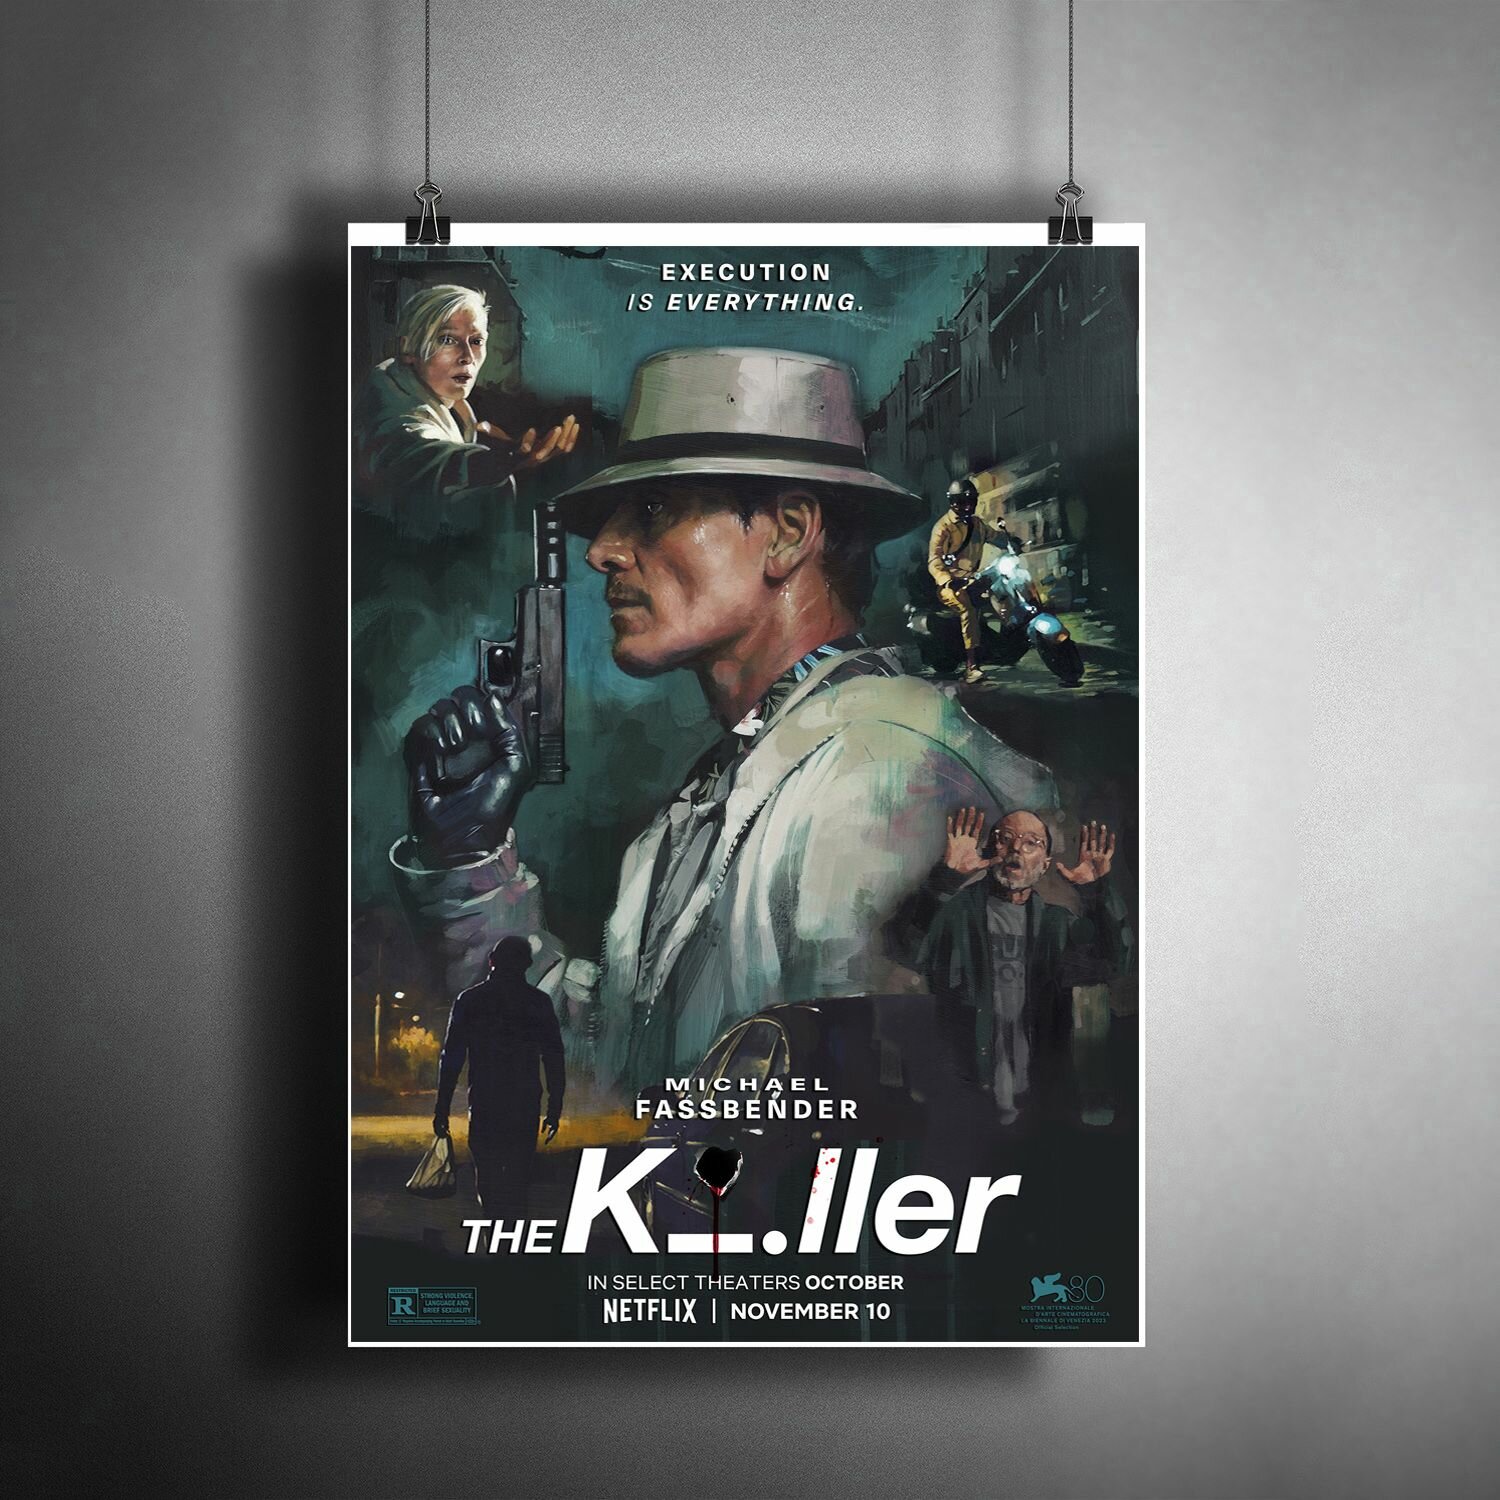 Постер плакат для интерьера "Фильм Убийца. The Killer" / Декор дома, офиса, комнаты, квартиры, детской A3 (297 x 420 мм)